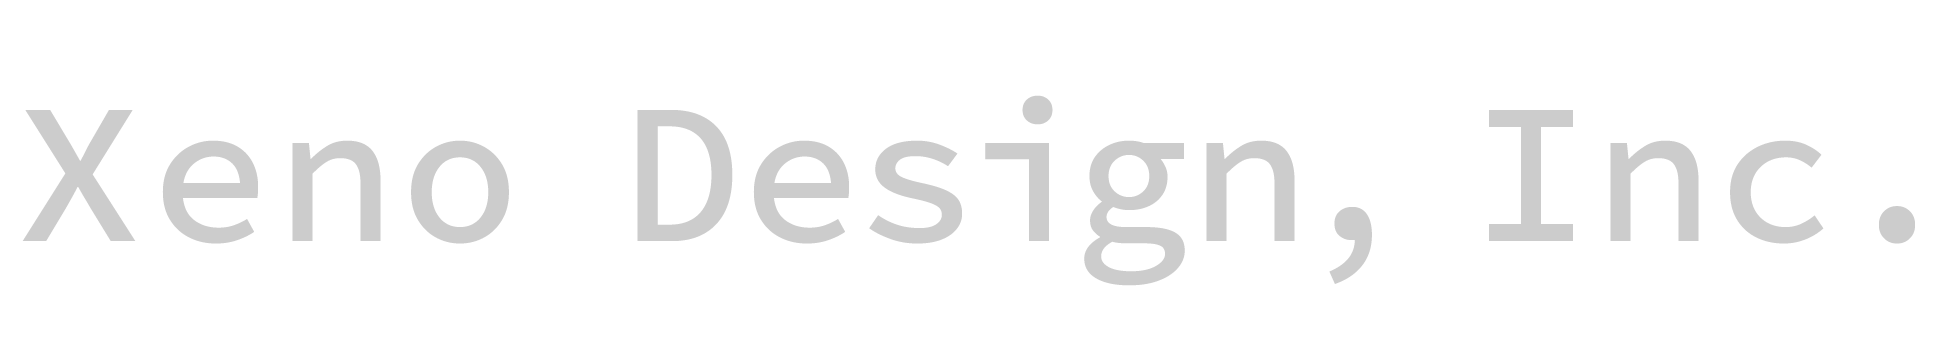 Xeno Design, Inc.